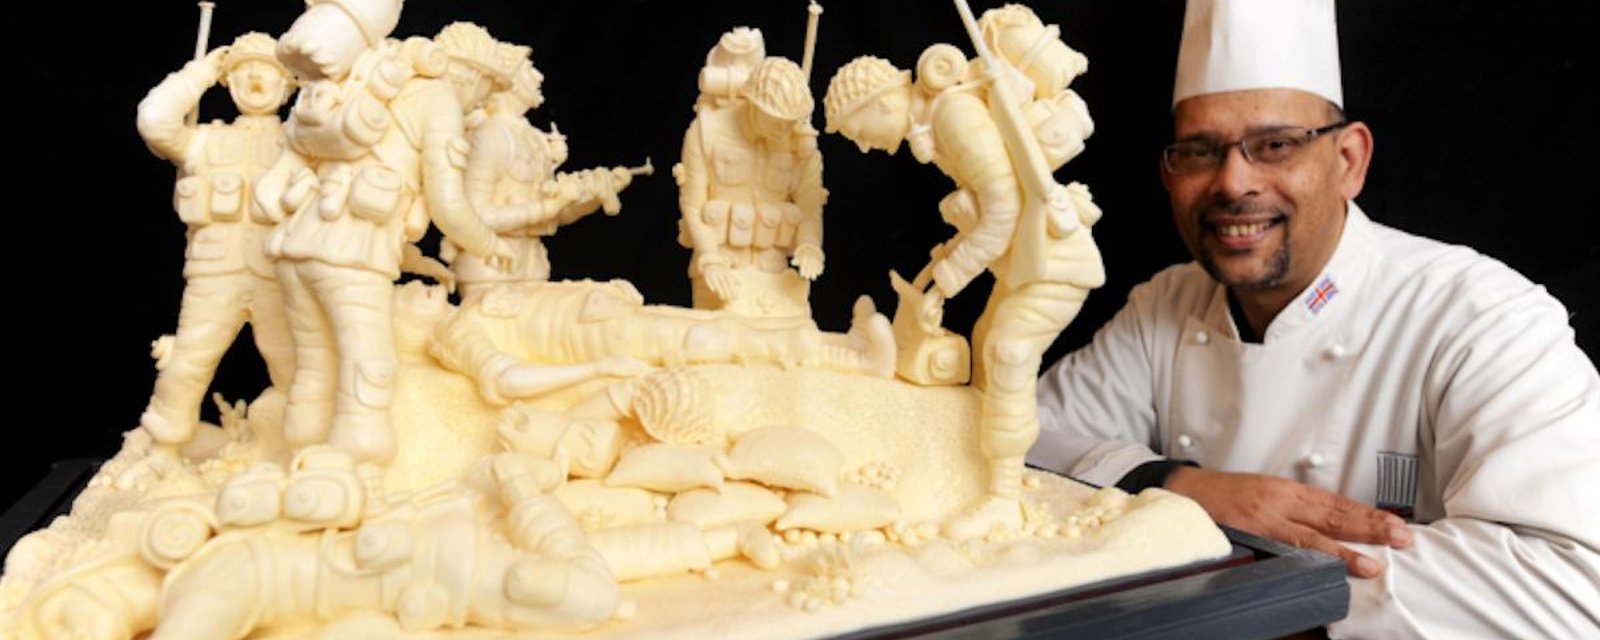 Ce chef anglais crée des sculptures incroyables… dans de la margarine!